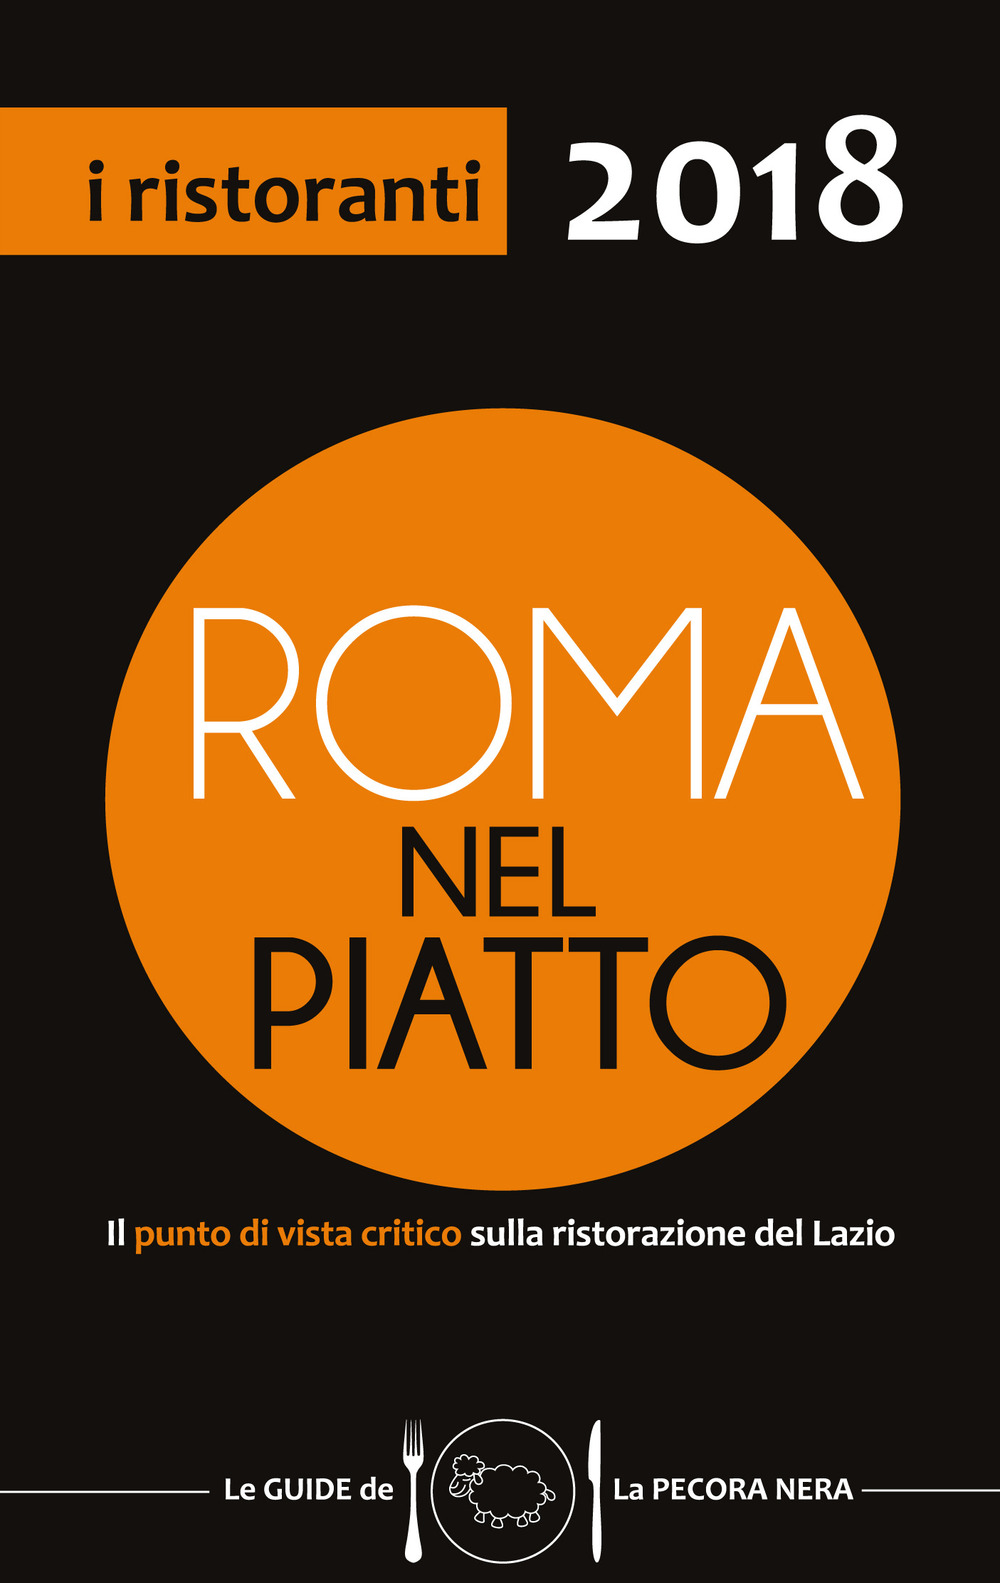 Roma nel piatto 2018. Il punto di vista critico sulla ristorazione del Lazio